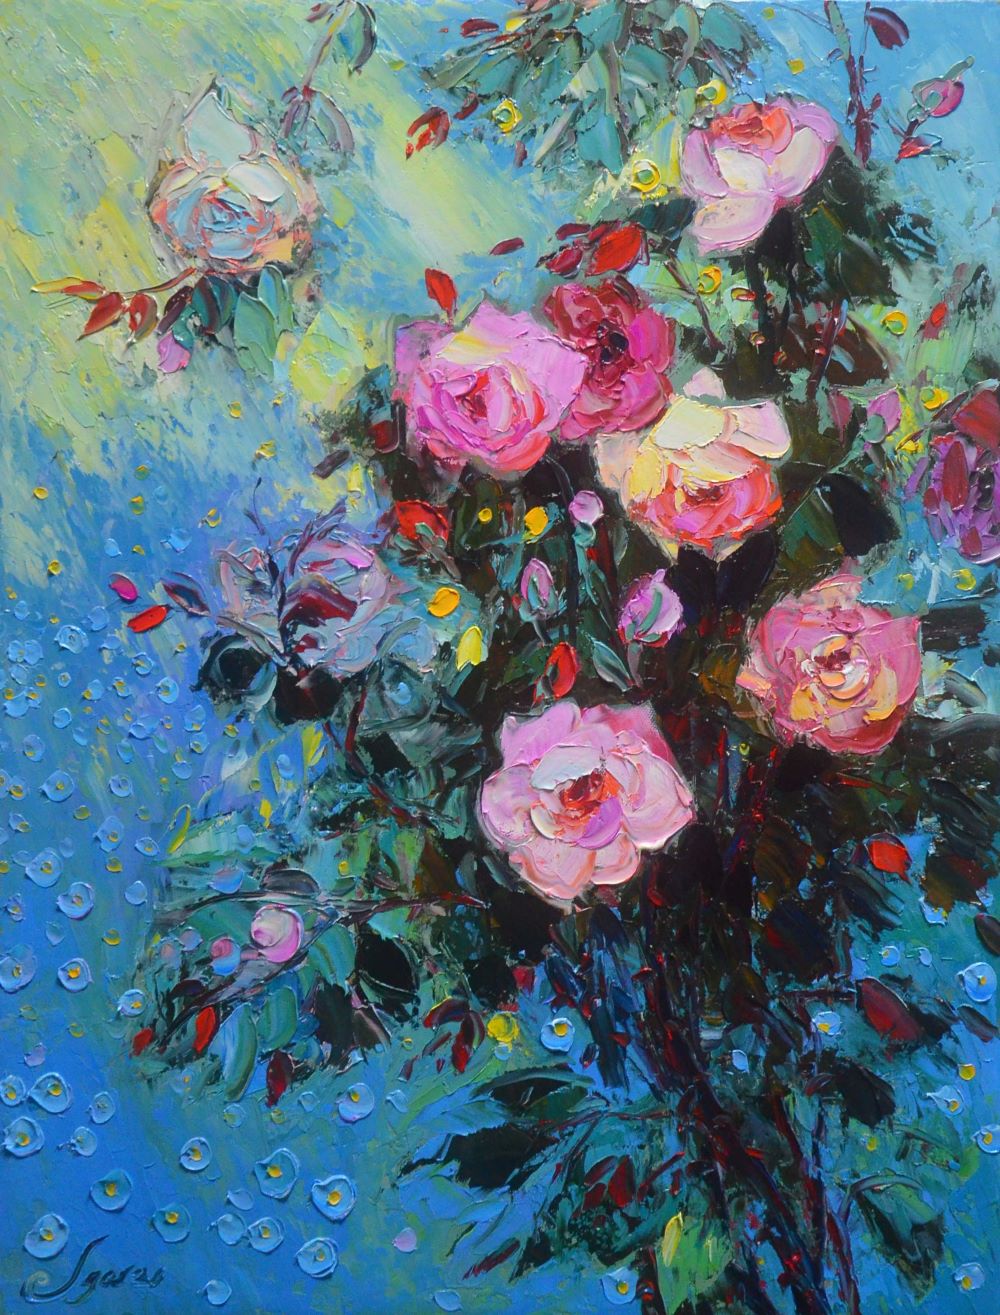 Vẽ tranh dầu hoa hồng là một nghệ thuật đầy tinh tế và nhuần nhuyễn. Họa sĩ sẽ sử dụng những màu sắc tinh tế để tạo nên những bông hồng ngát hương, gợi lên cảm xúc sâu trong lòng người thưởng ngoại.